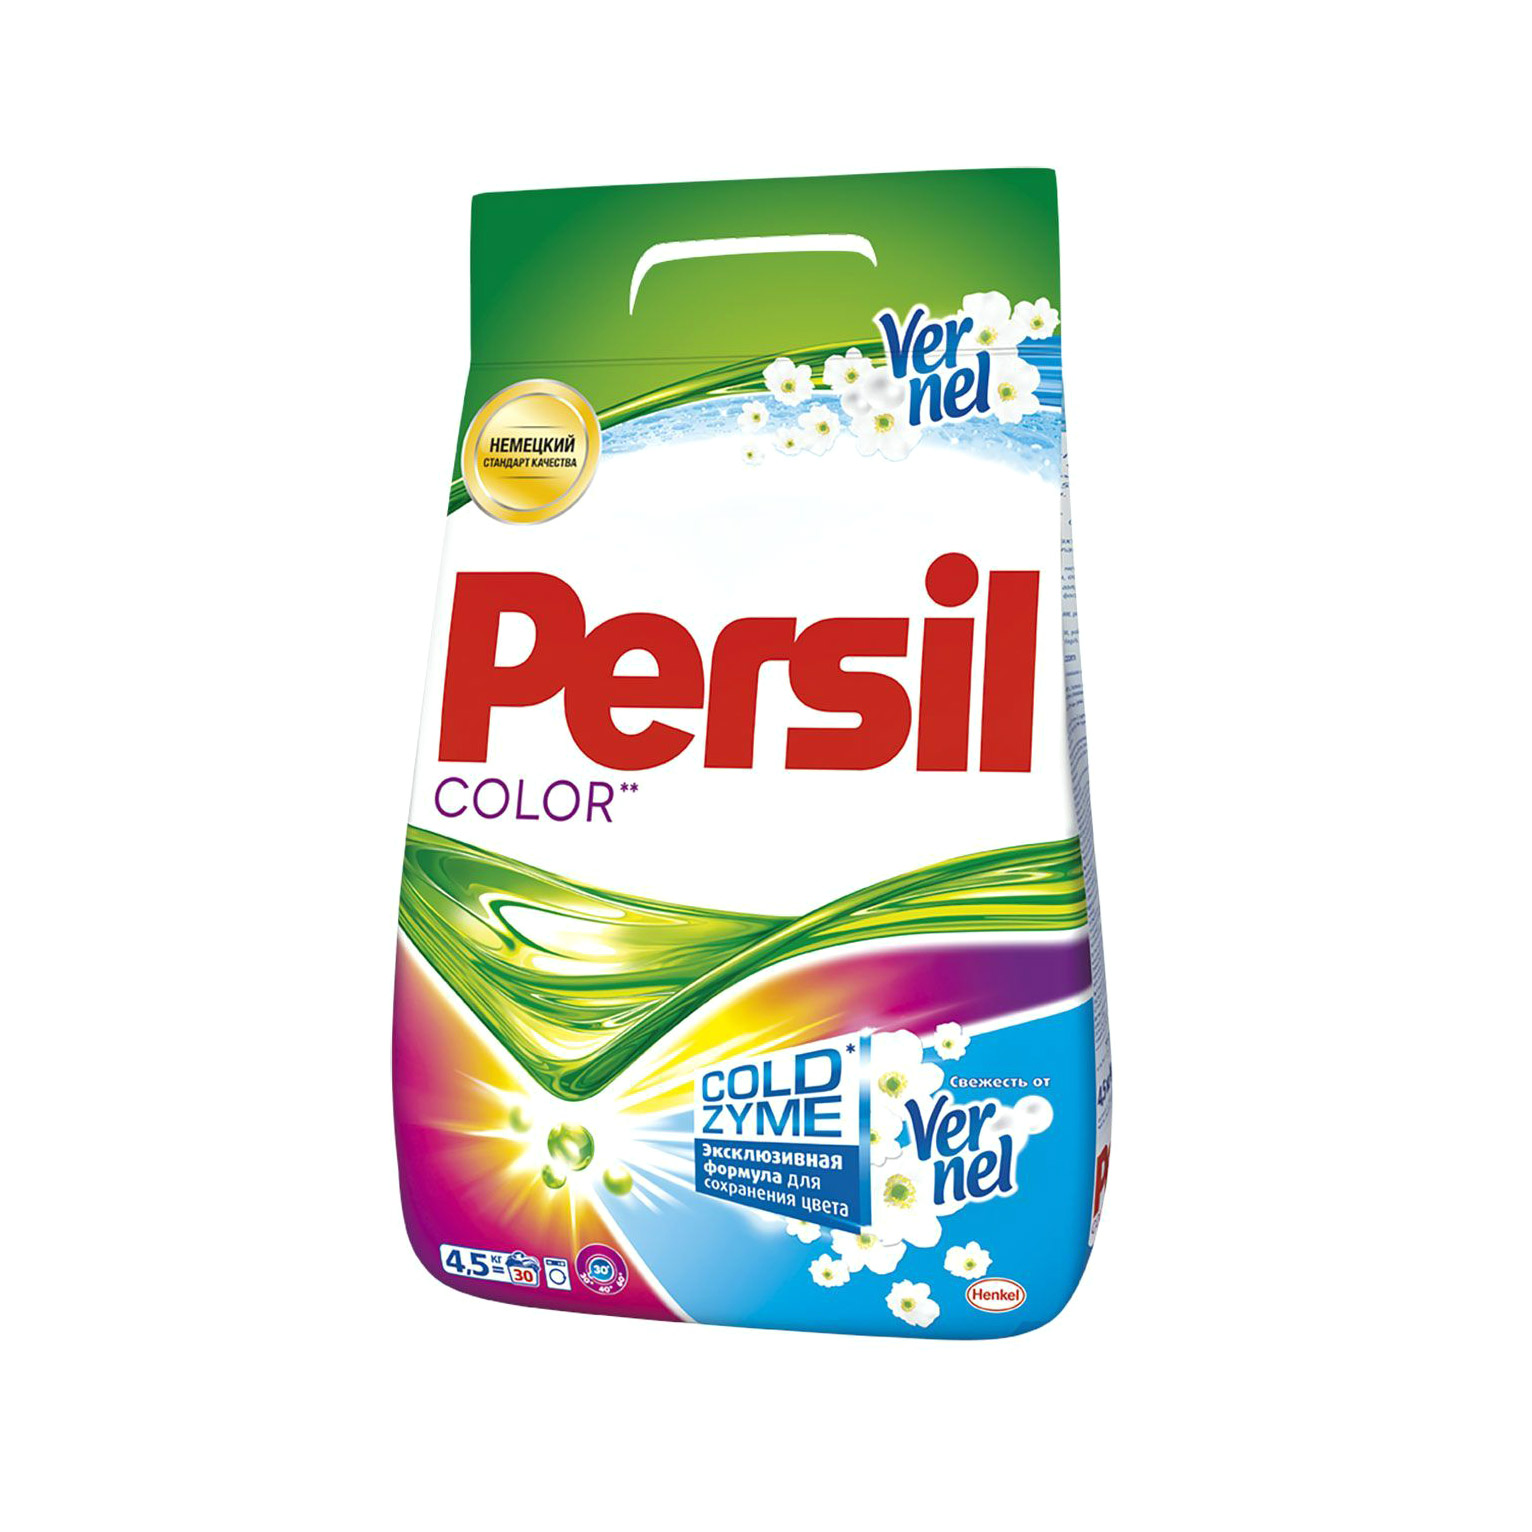 Стиральный порошок Persil Color свежесть Vernel 4.5 кг стиральный порошок persil gold свежесть vernel 3 кг